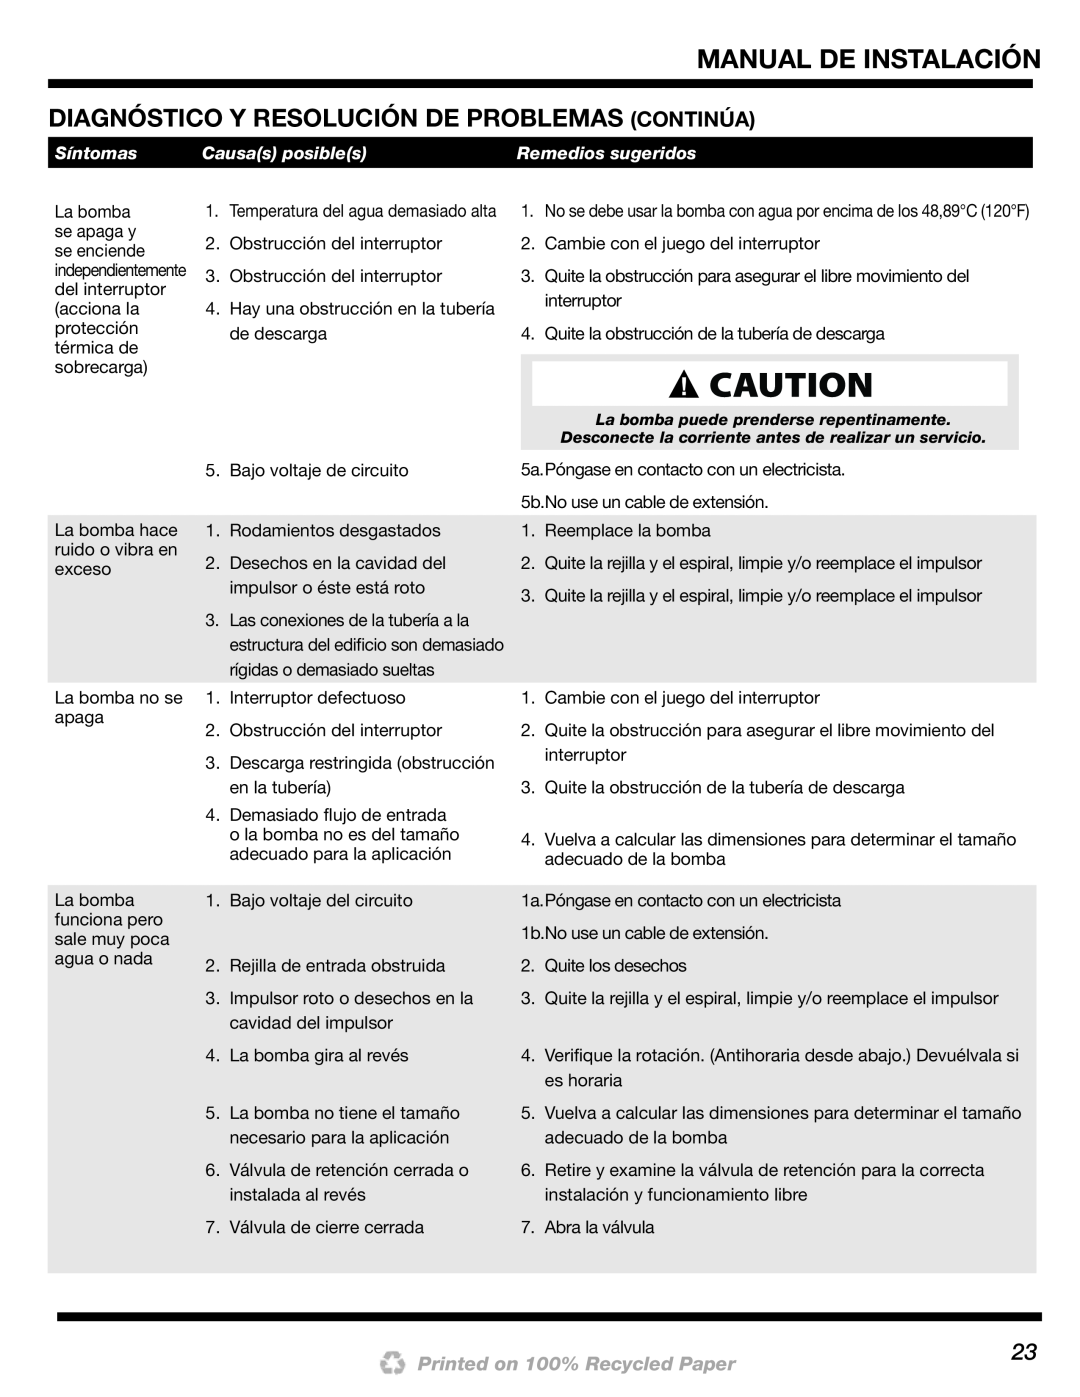 Wayne 200000-015 Diagnóstico Y Resolución De Problemas Continúa, Manual De Instalación, Printed on 100% Recycled Paper 